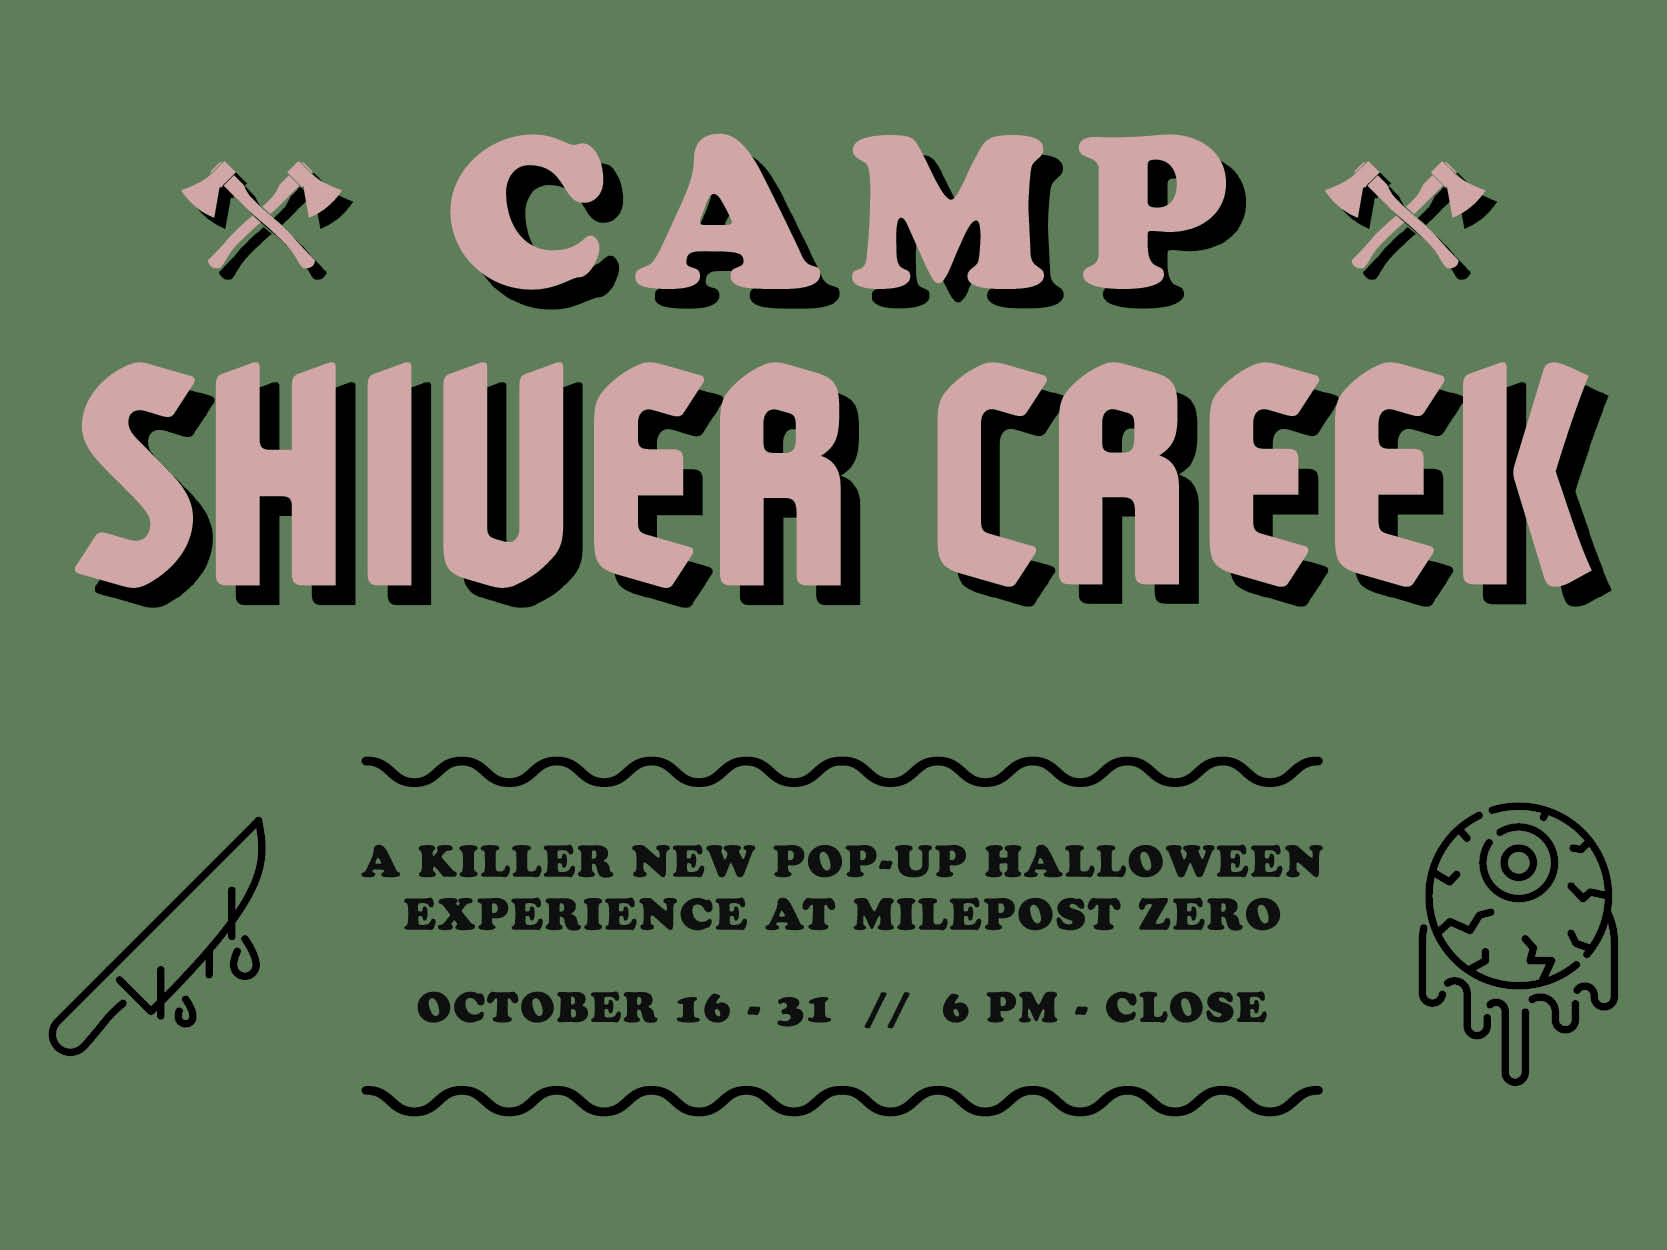 McGregor Square - Events - Camp Shiver Creek details